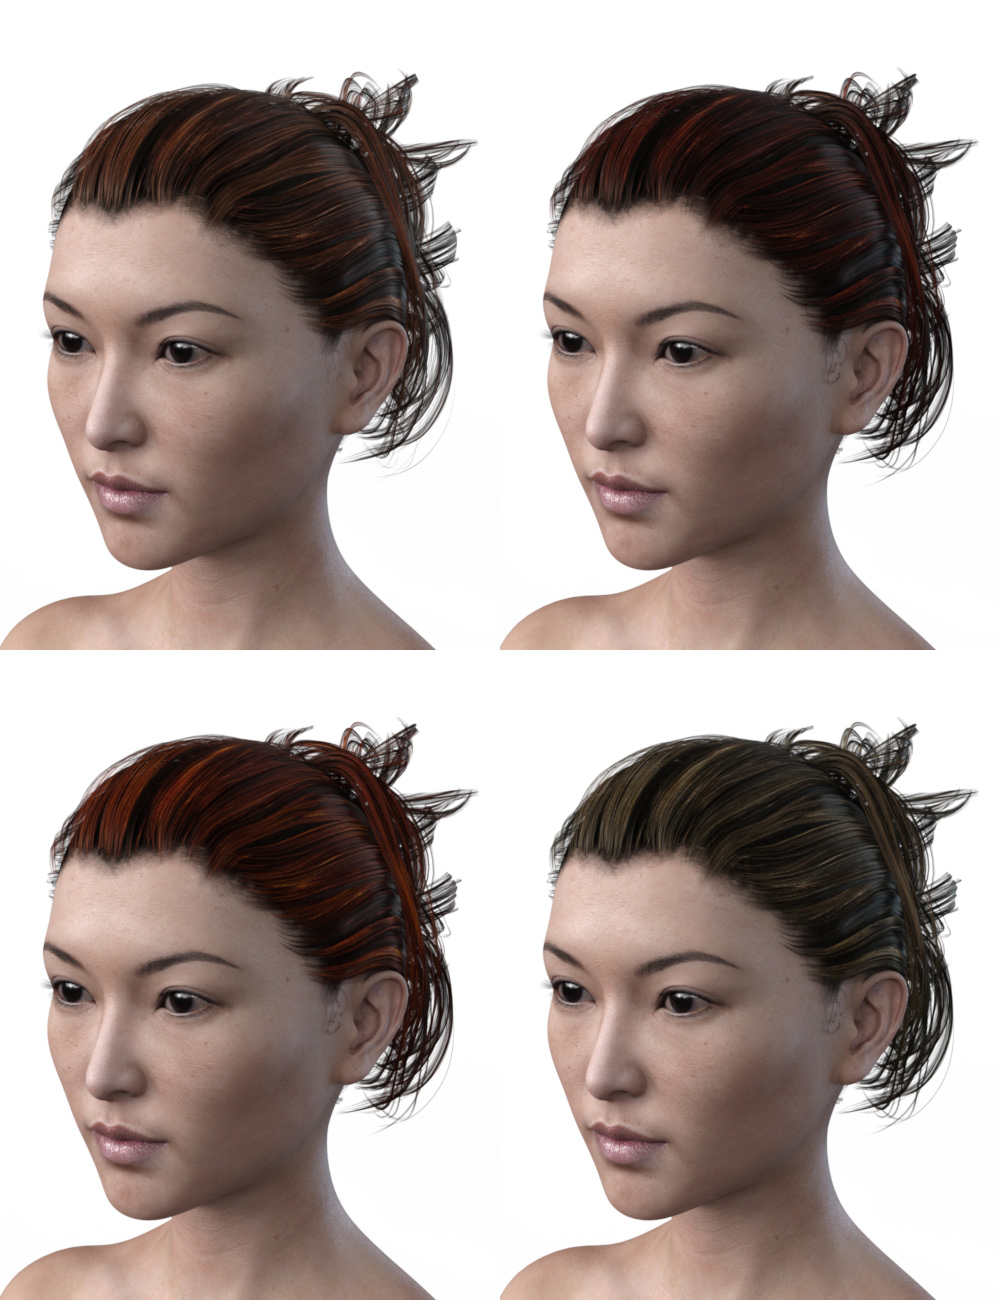 FBX- Mei Lin Vagabond by: Paleo, 3D Models by Daz 3D